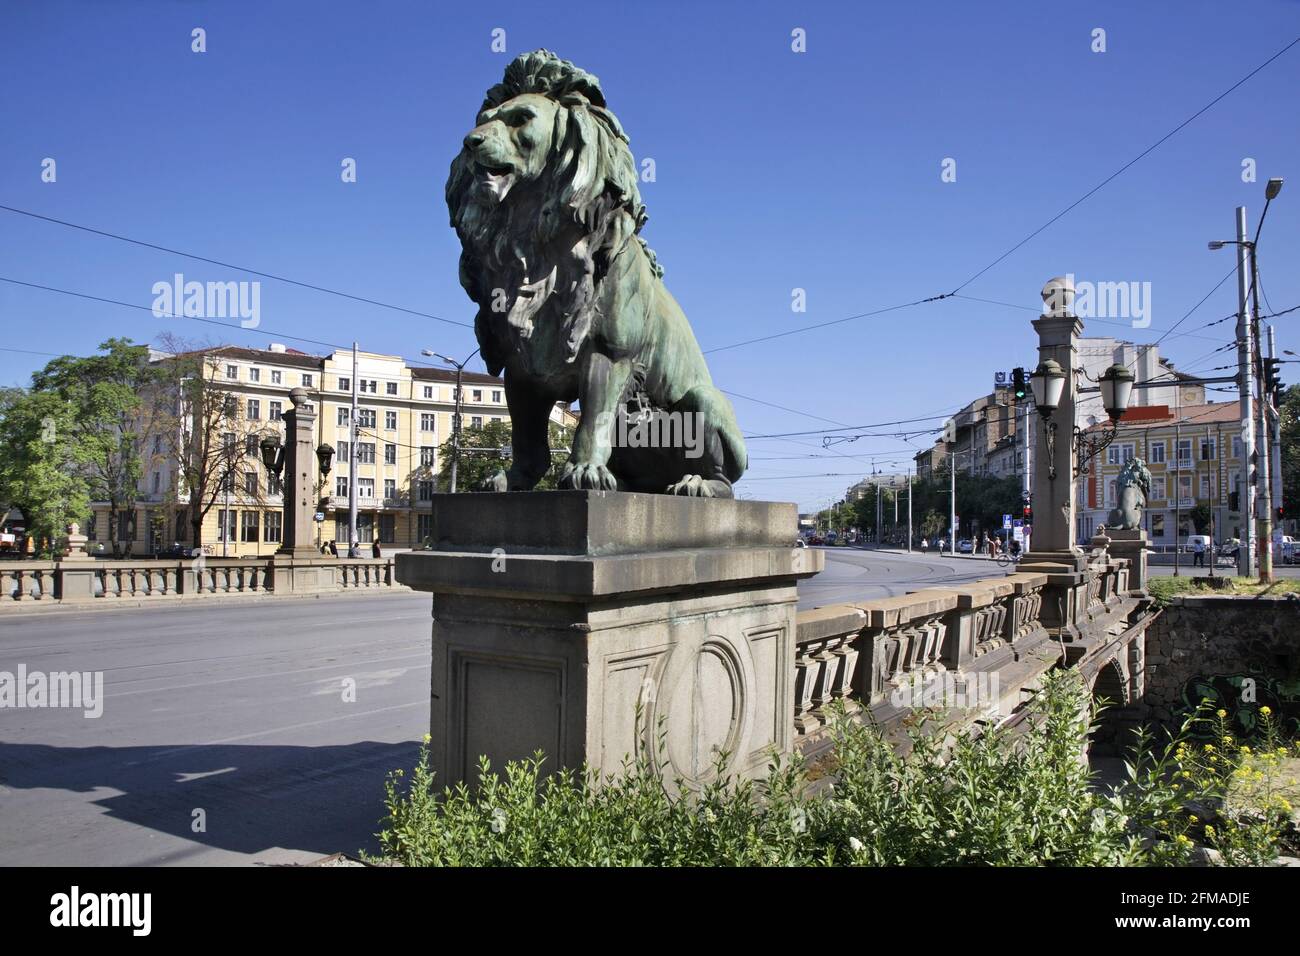 Lavov most (Lions Bridge) in Sofia. Bulgaria Stock Photo